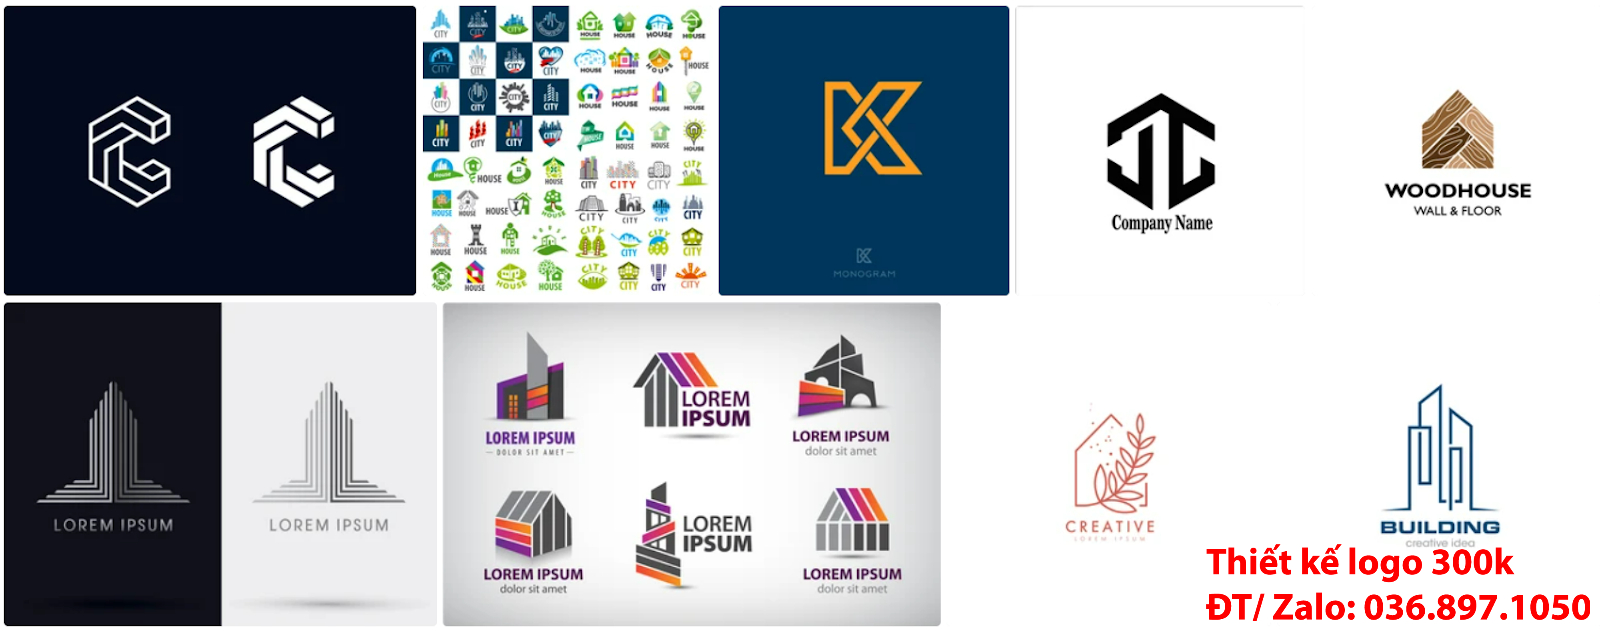 Công ty cung cấp mẫu thiết kế logo công ty kiến trúc đẹp nhất hiện nay đơn giản giá rẻ